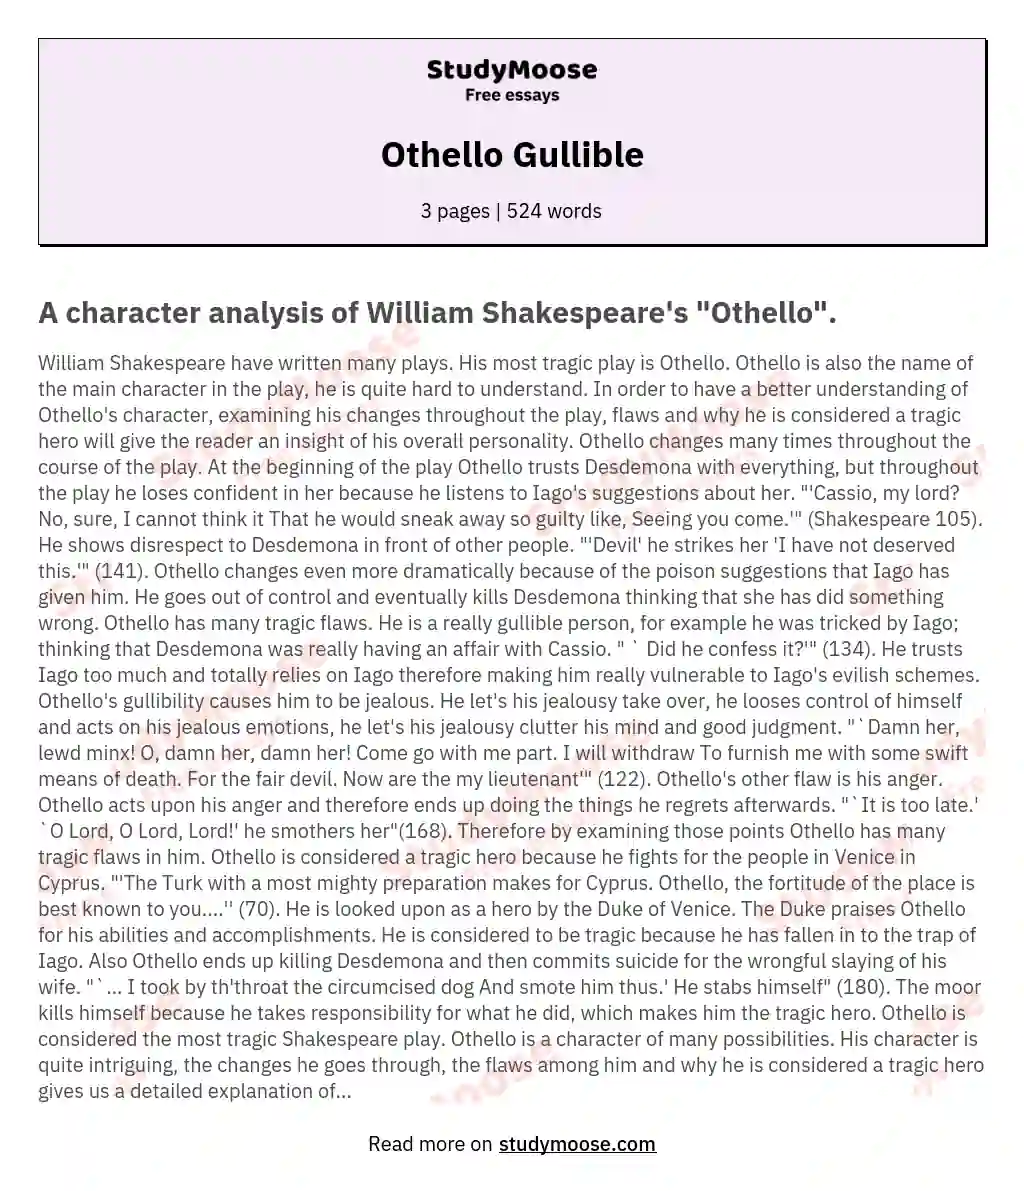 Othello Gullible essay